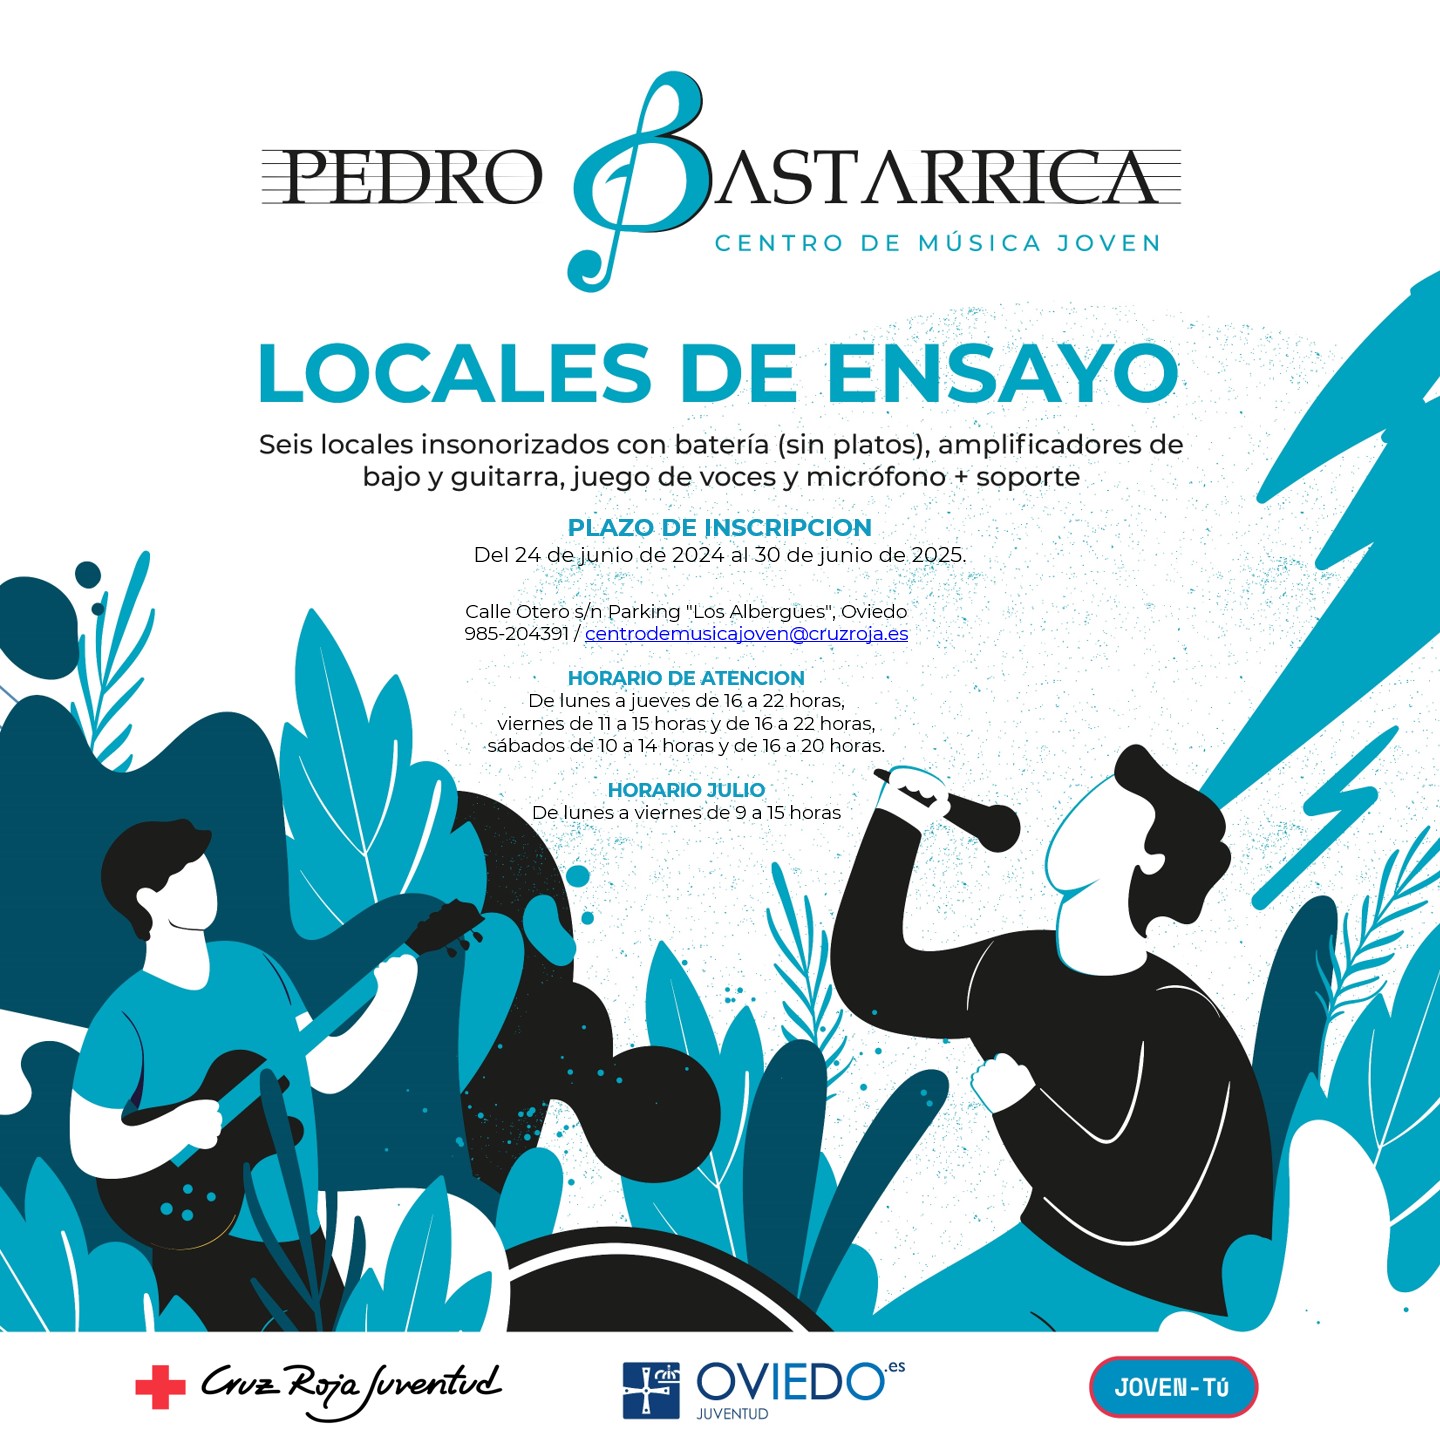 Solicitudes de los locales de ensayo del Centro de Música Joven Pedro Bastarrica, curso 2024-2025